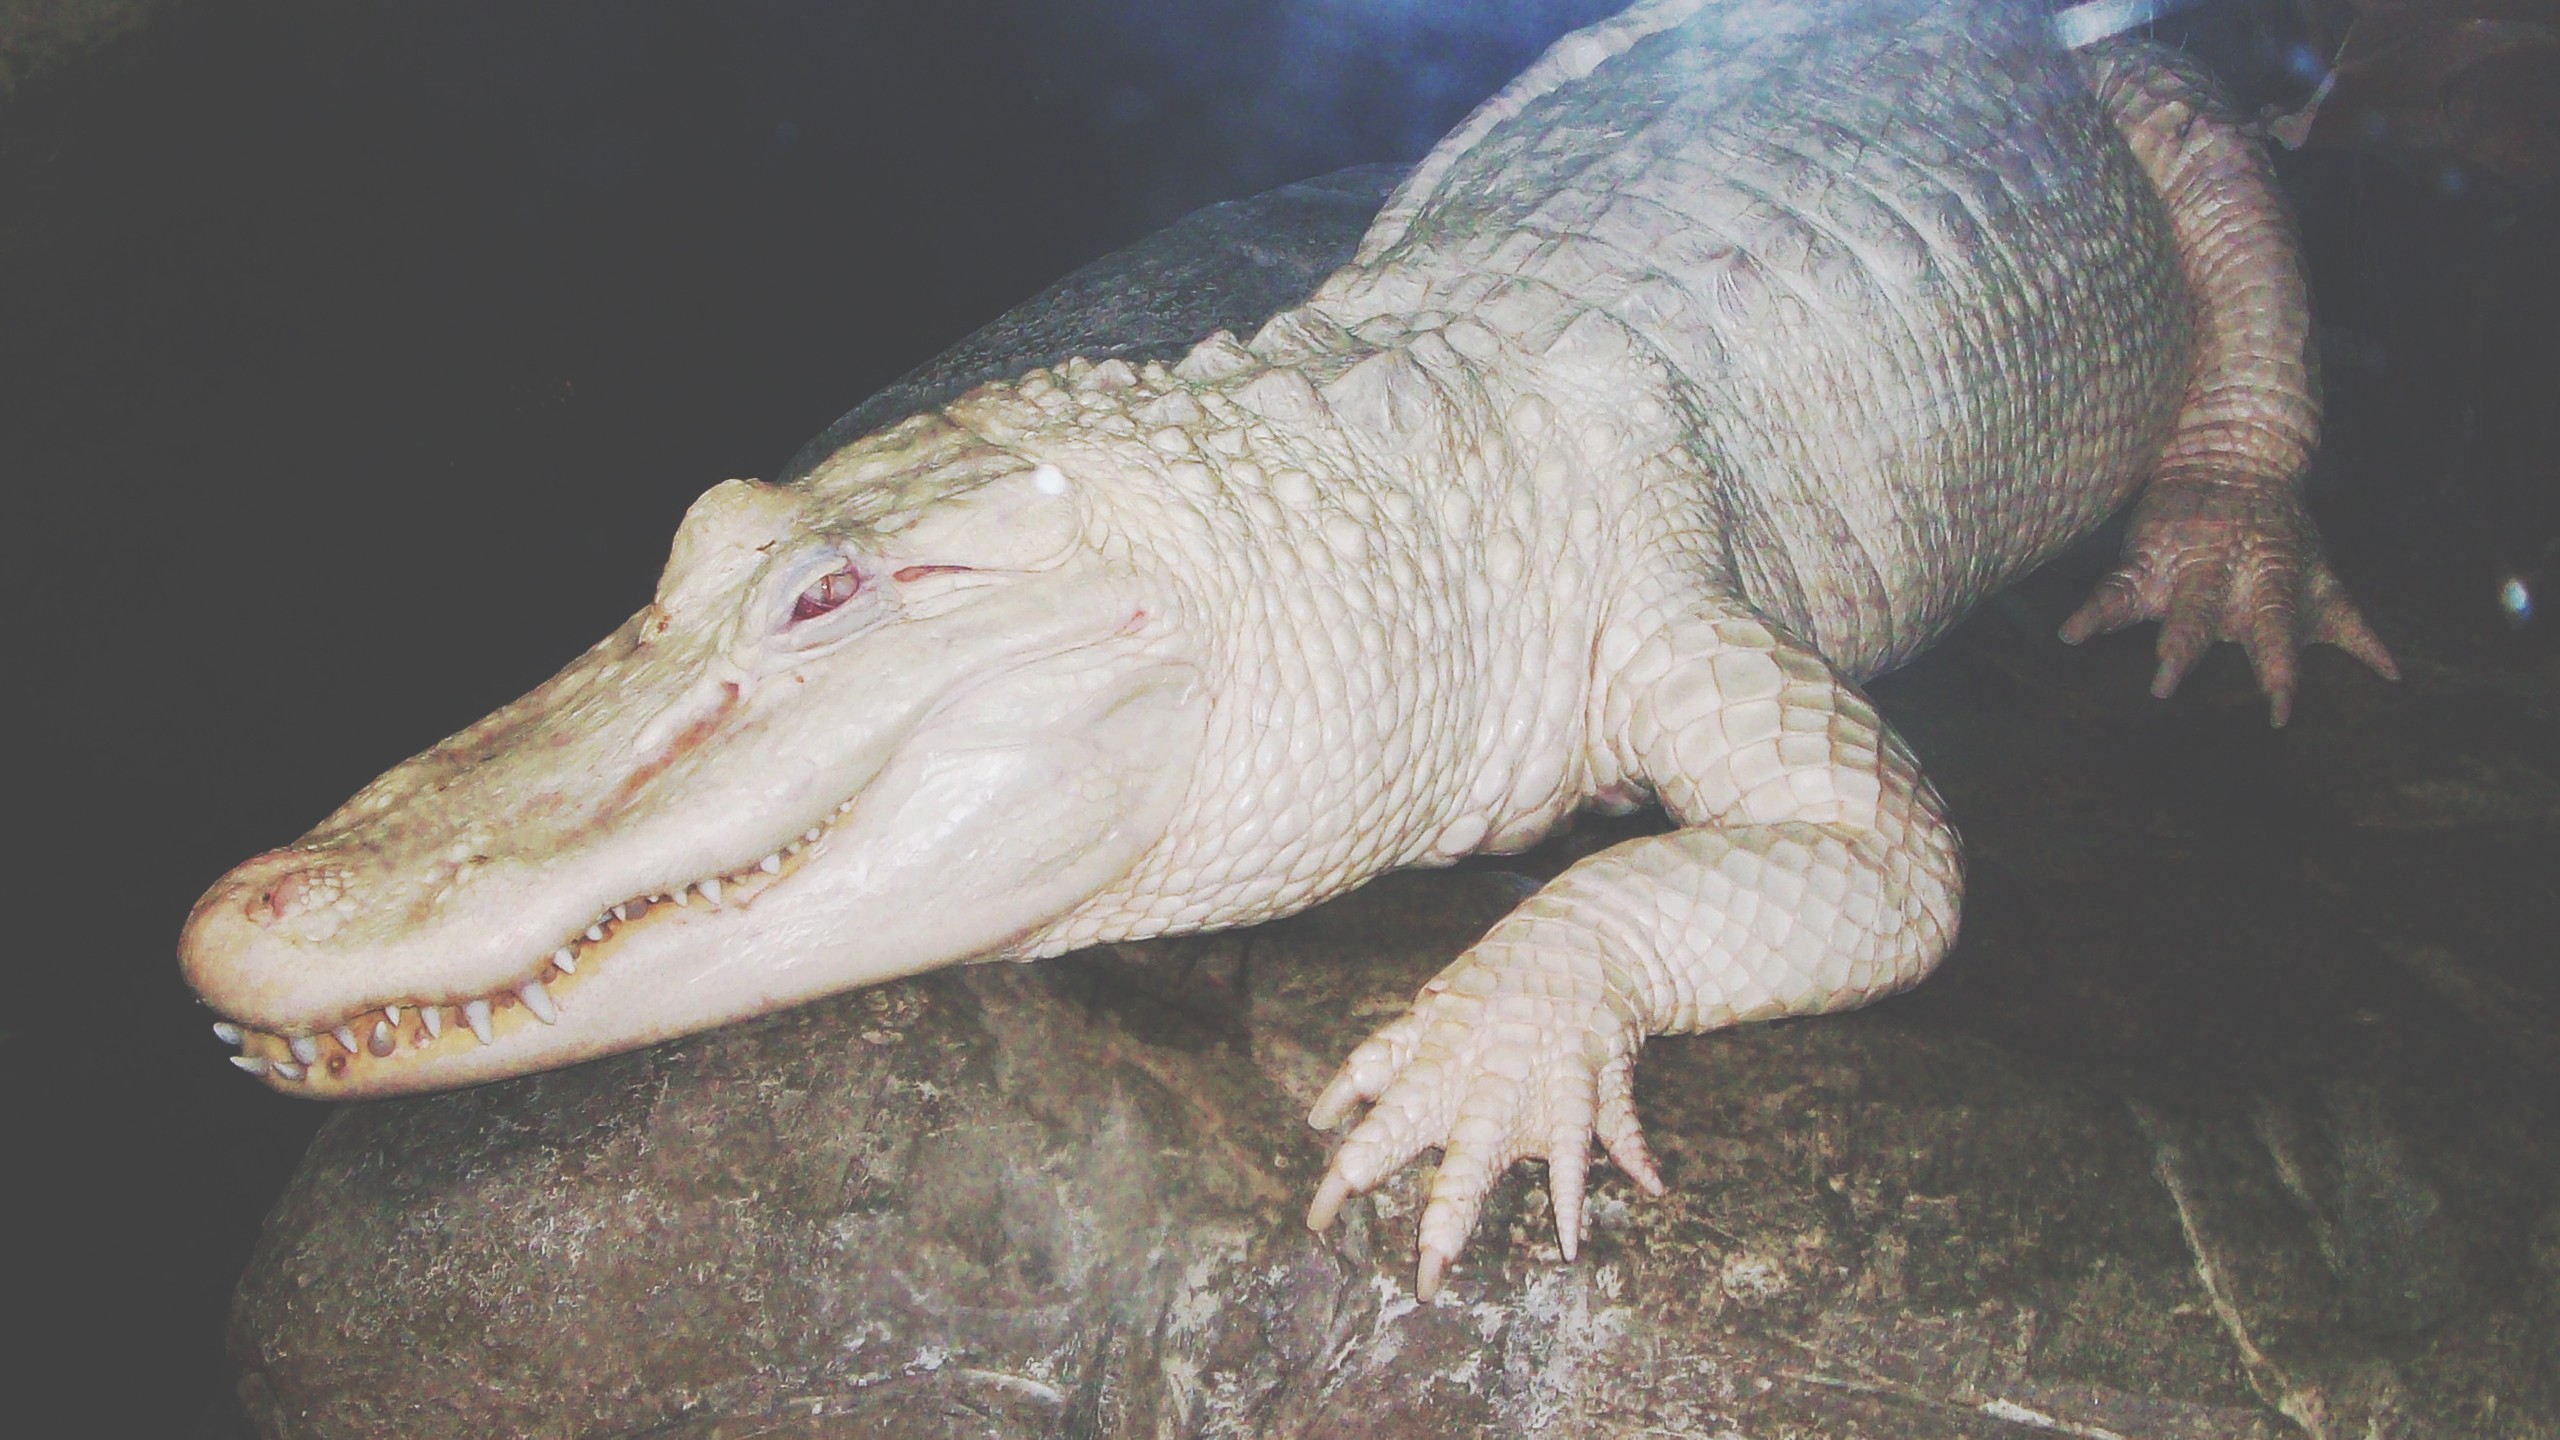 General 2560x1440 white crocodiles reptiles albino animals